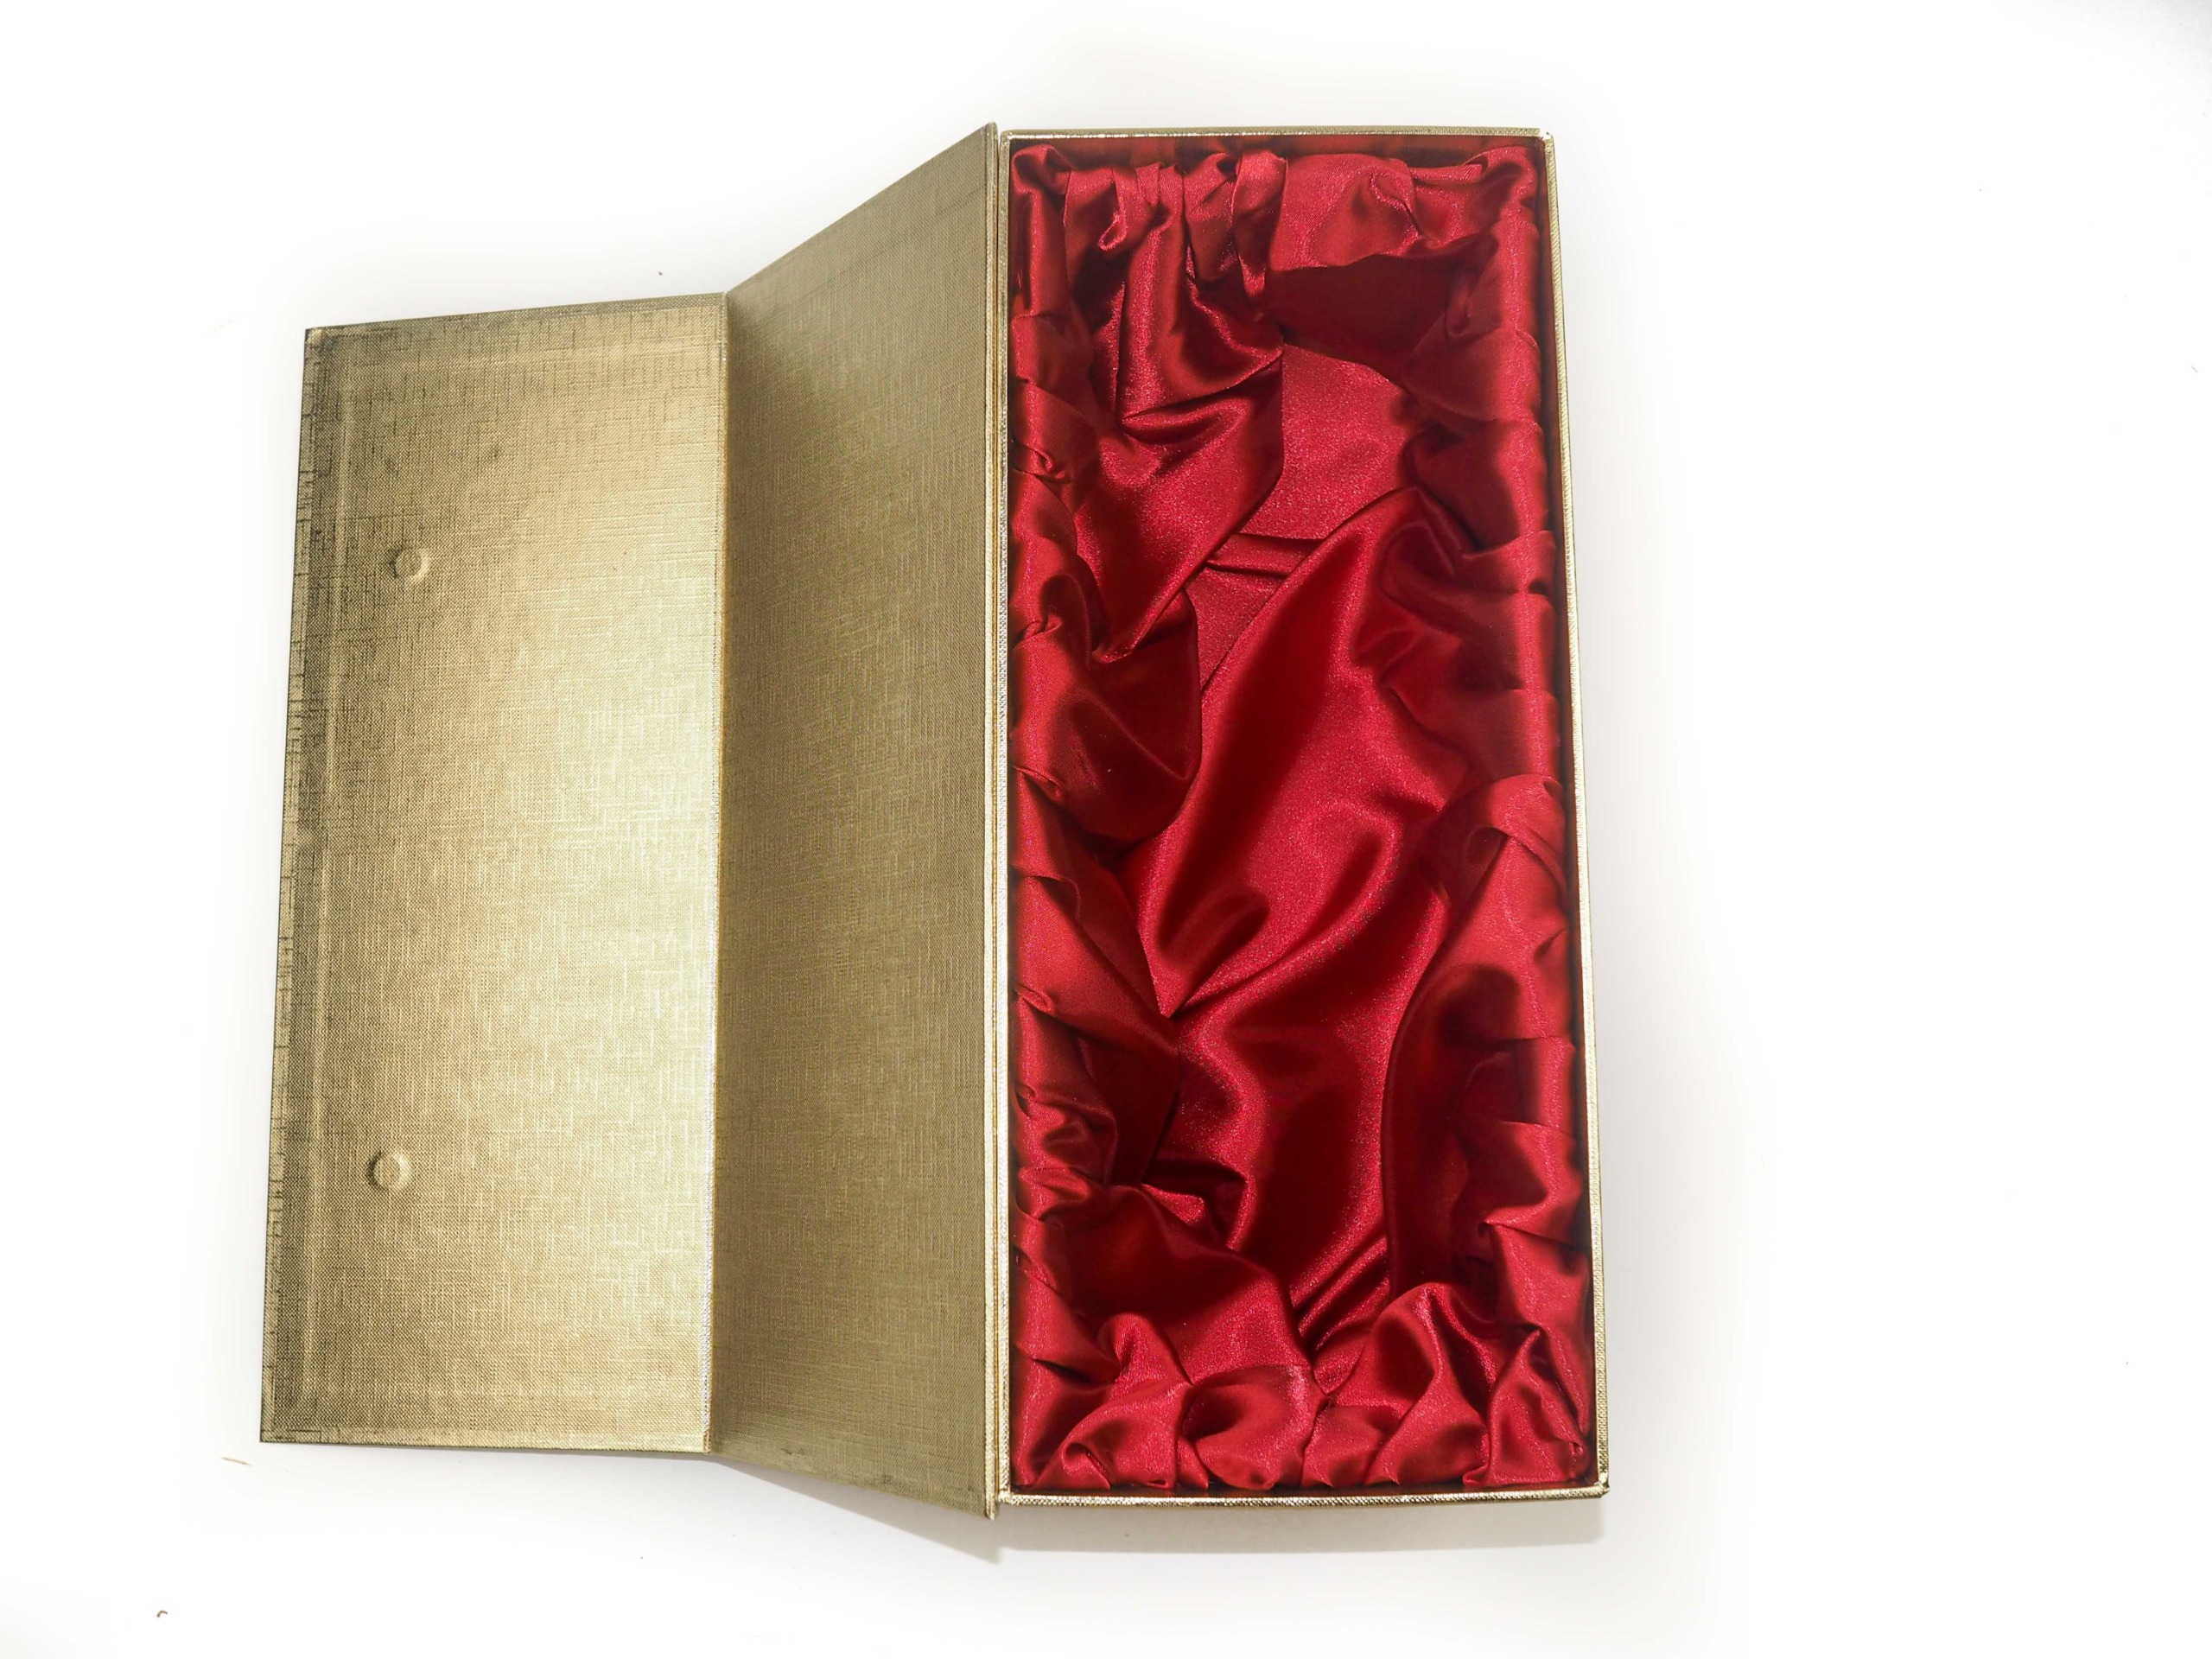 Dárková krabička s magnetickým zavíráním byla vyrobena na zakázku na vložení trofeje kulturistické show EVLS Prague. Uvnitř byla vyrobena pevná vložka potažená červeným saténem. Zvenku byla použita ražba loga a vyroben papírový rukáv na ochranu krabičky.